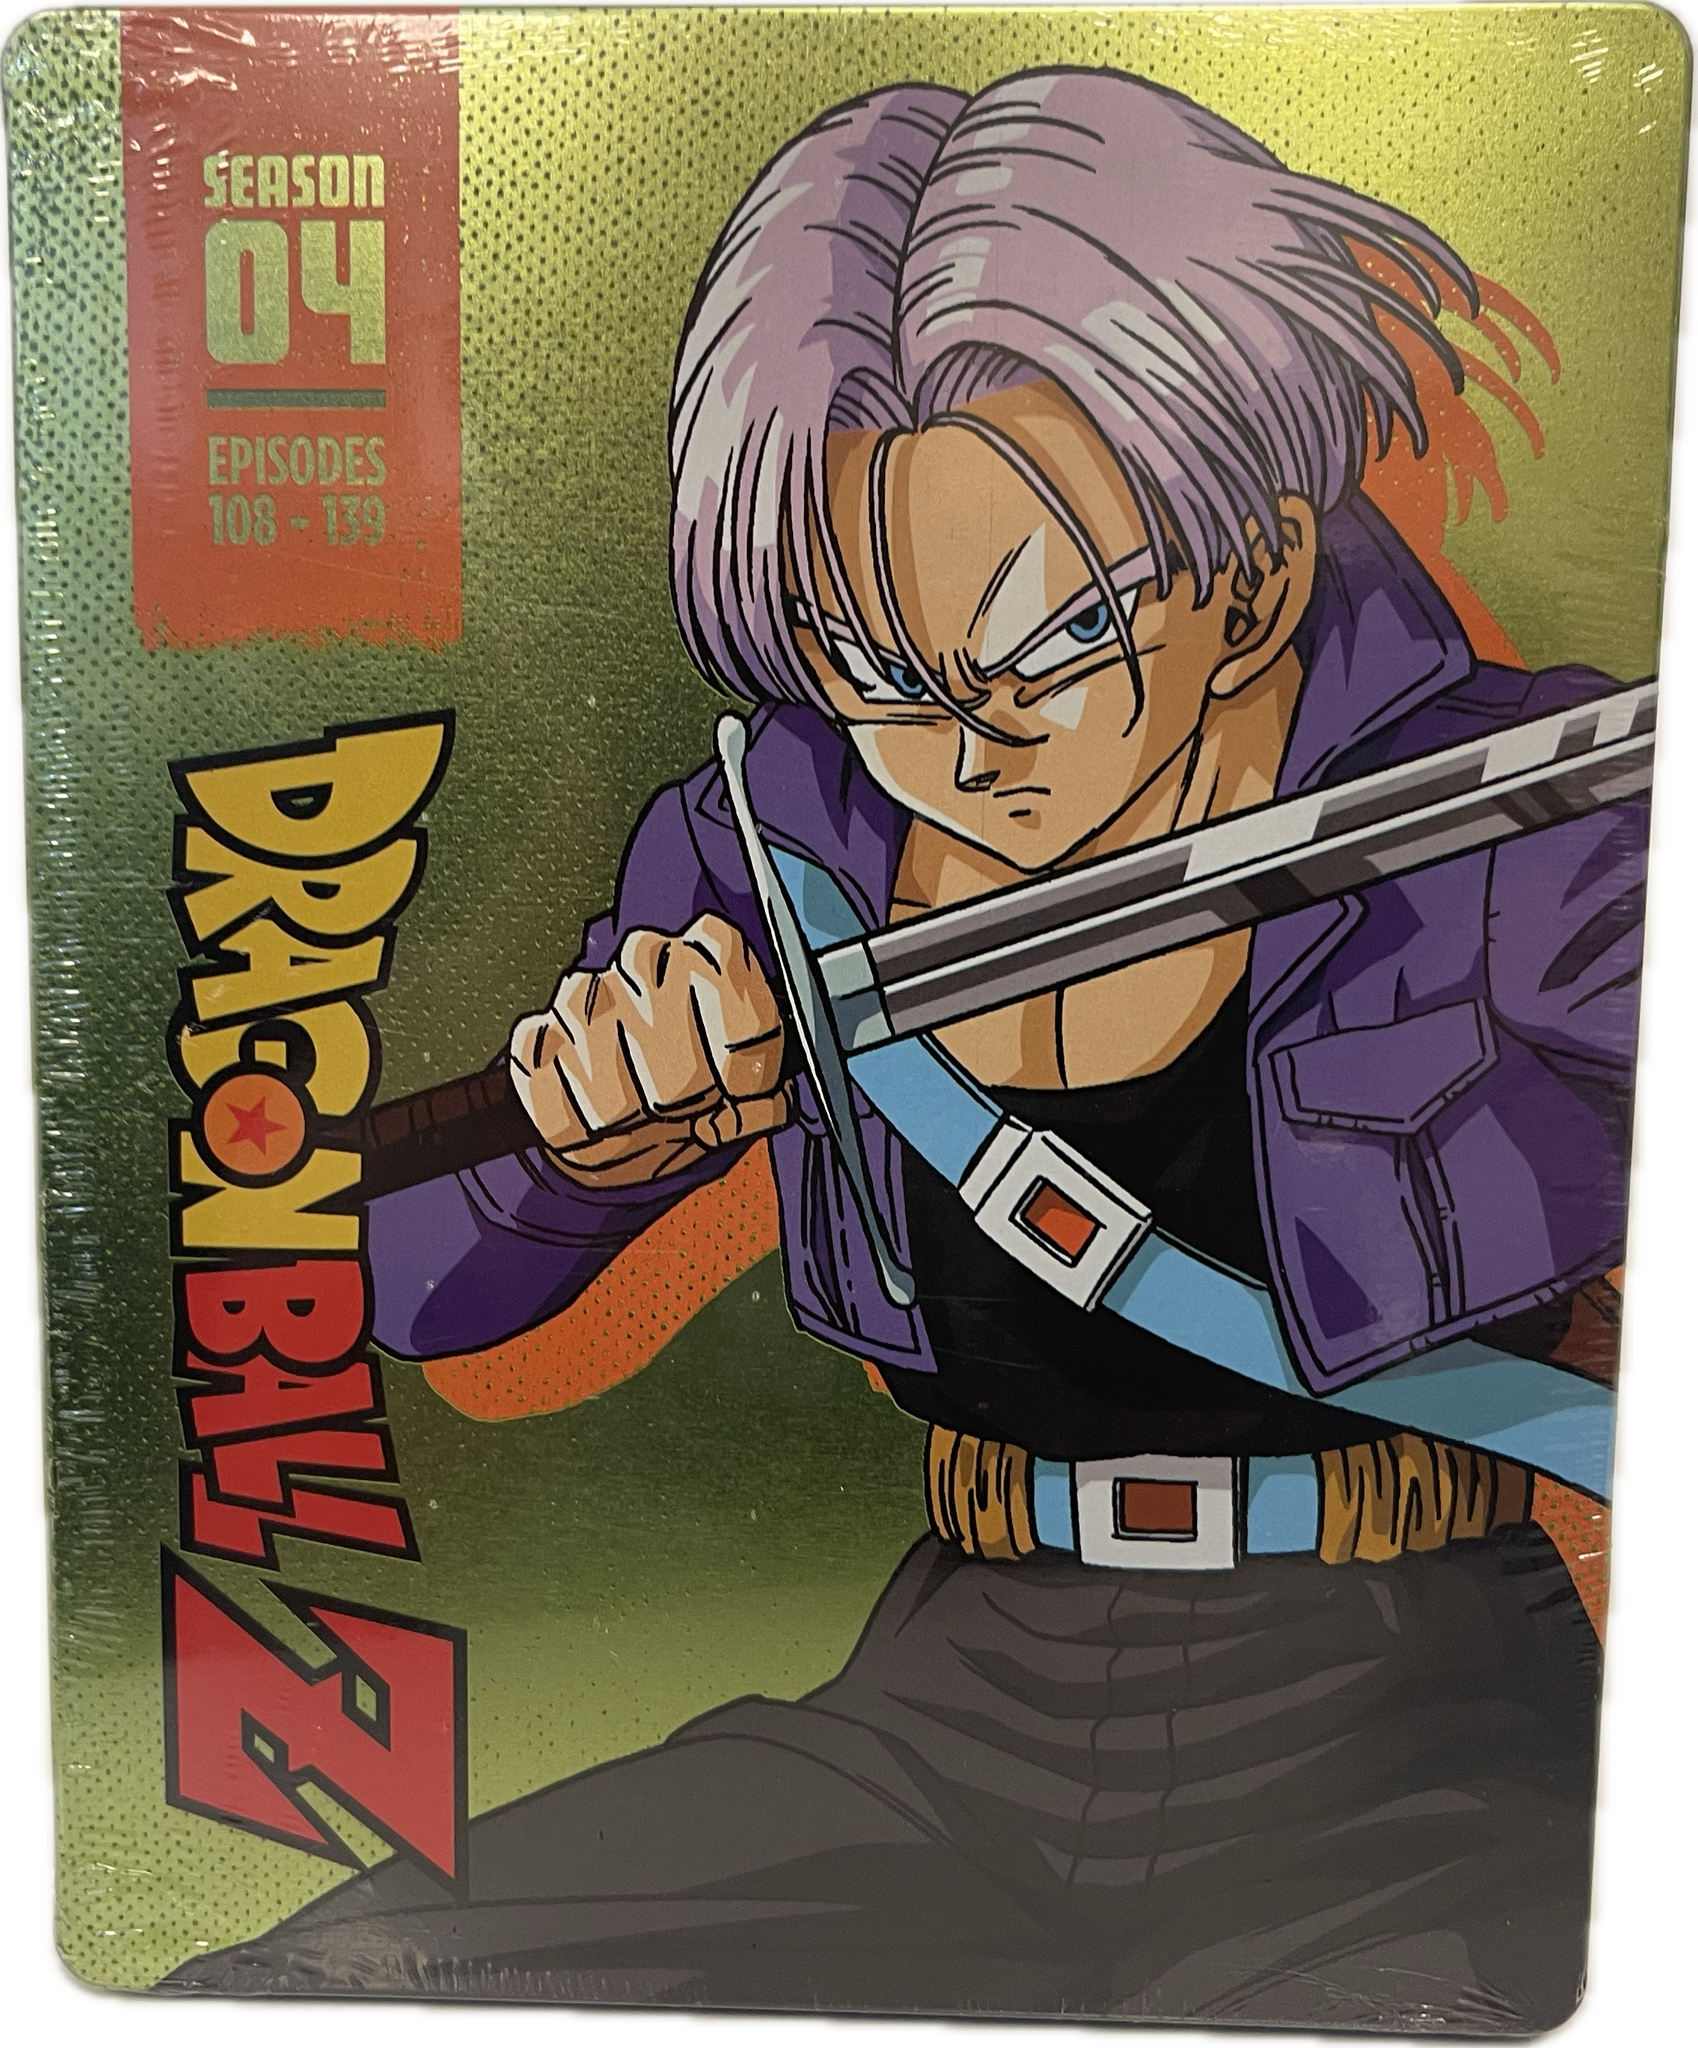 Dragon Ball Z Season 04 Episodes 108-139 4-Disc Blu-Ray Steelbook Set